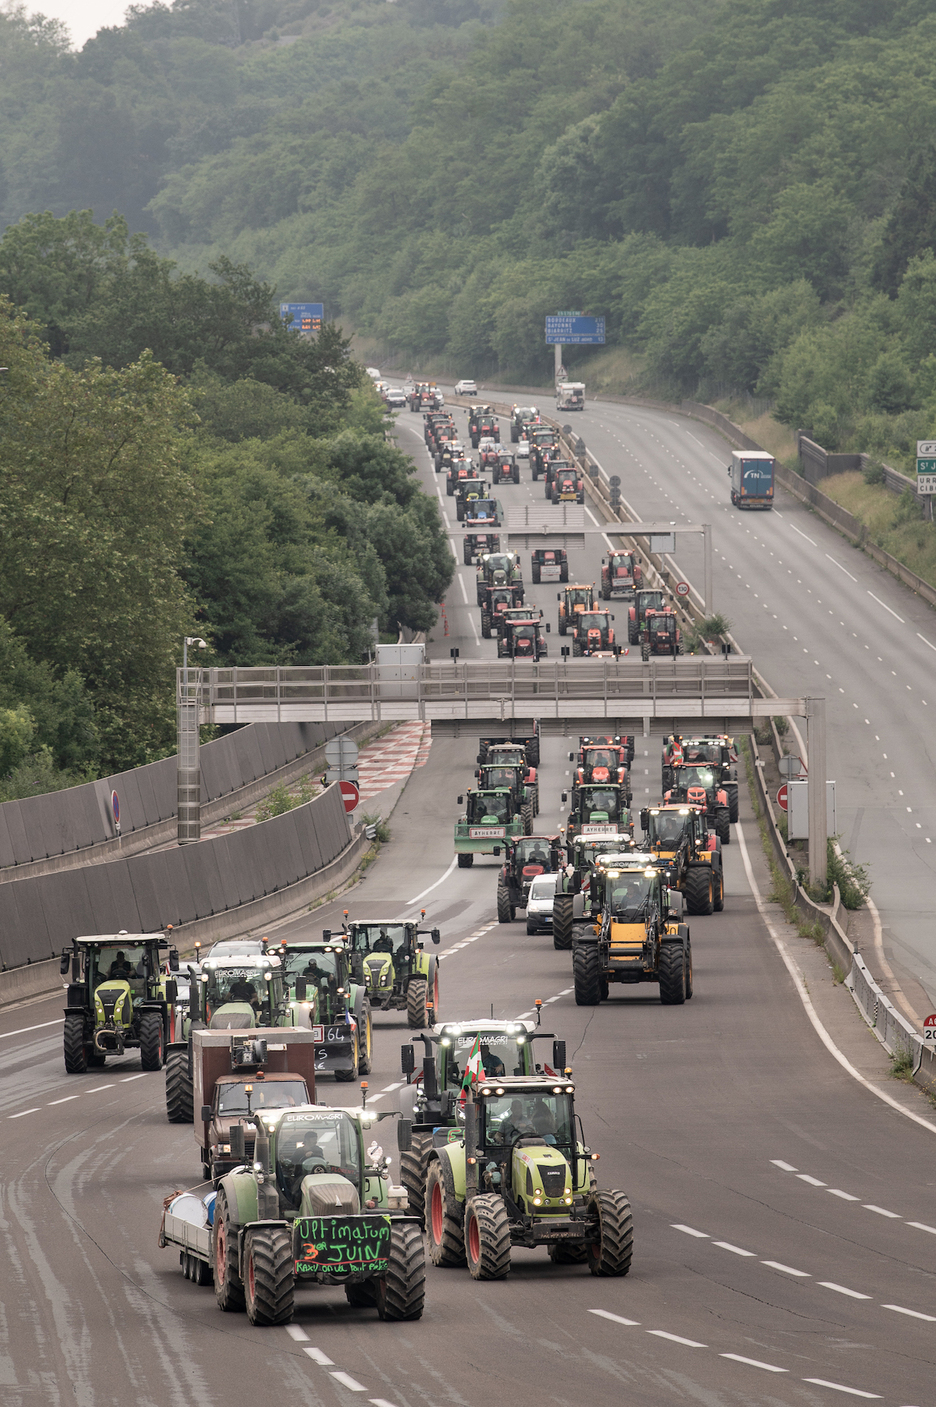 La caravana de agricultores llegando a Biriatu por la A-63.